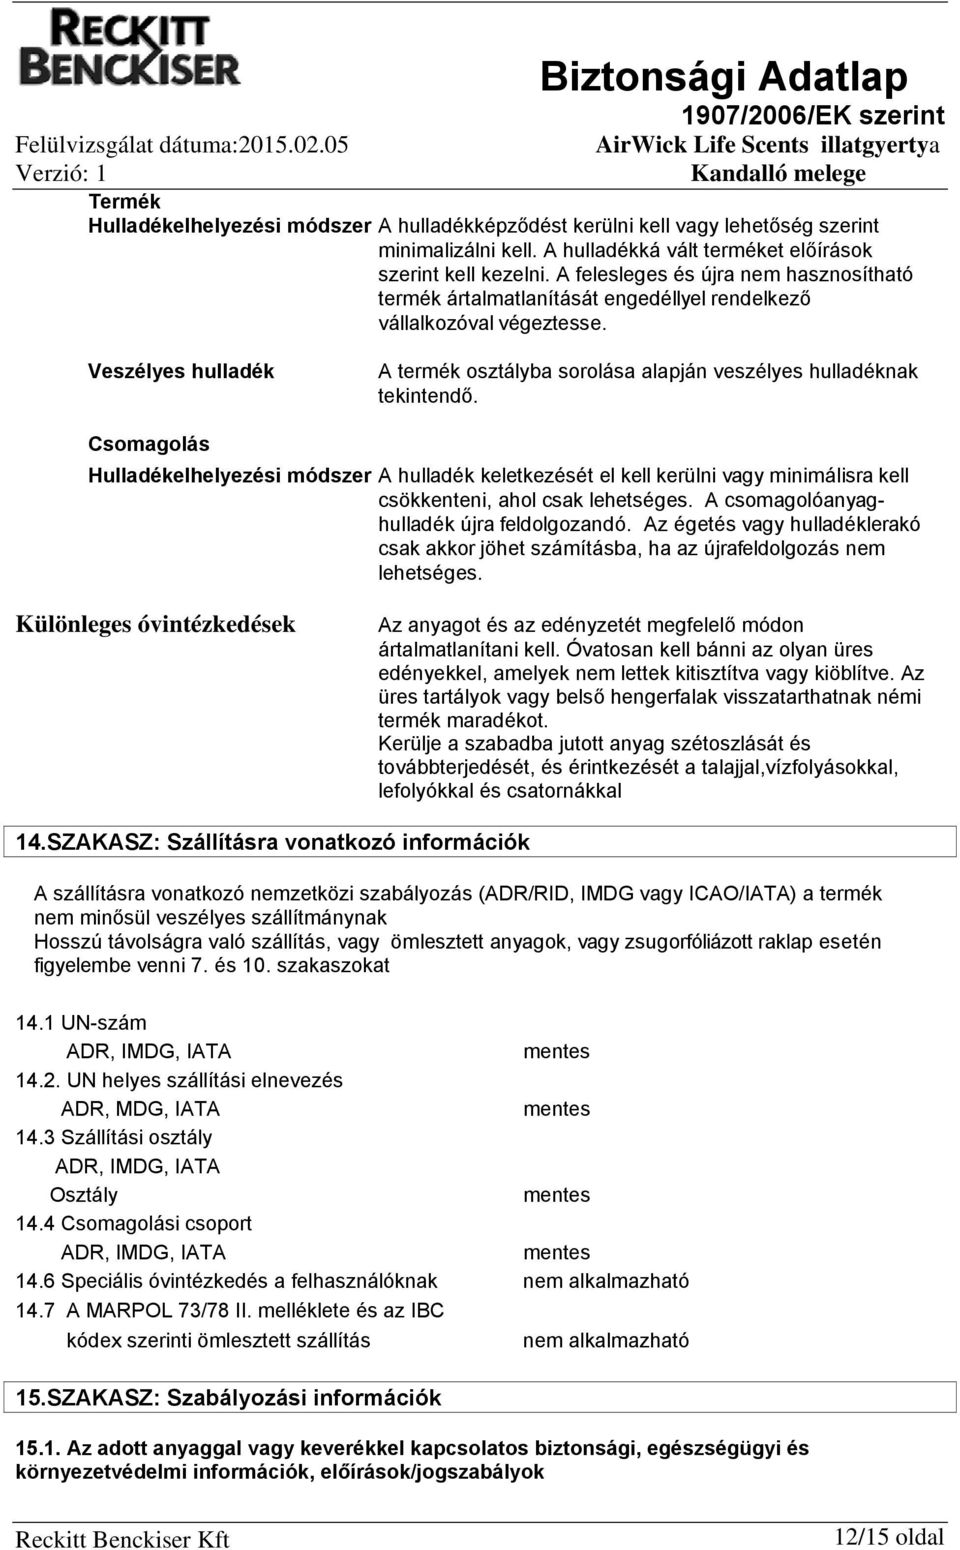 Biztonsági Adatlap 1907/2006/EK szerint - PDF Ingyenes letöltés